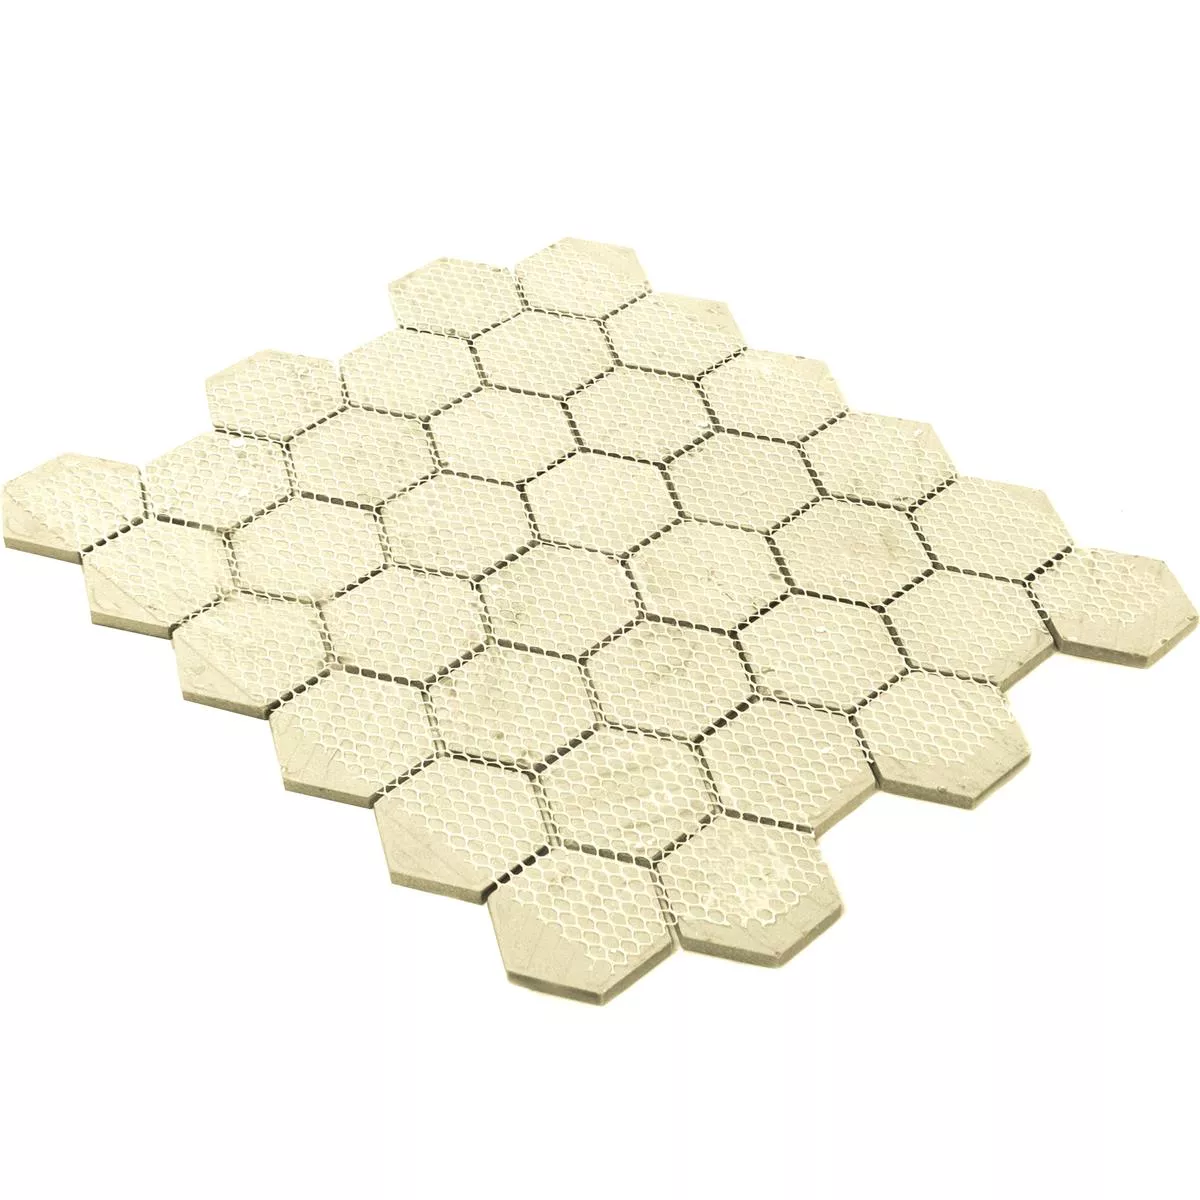 Keramik Mosaikfliesen Eldertown Hexagon Grau